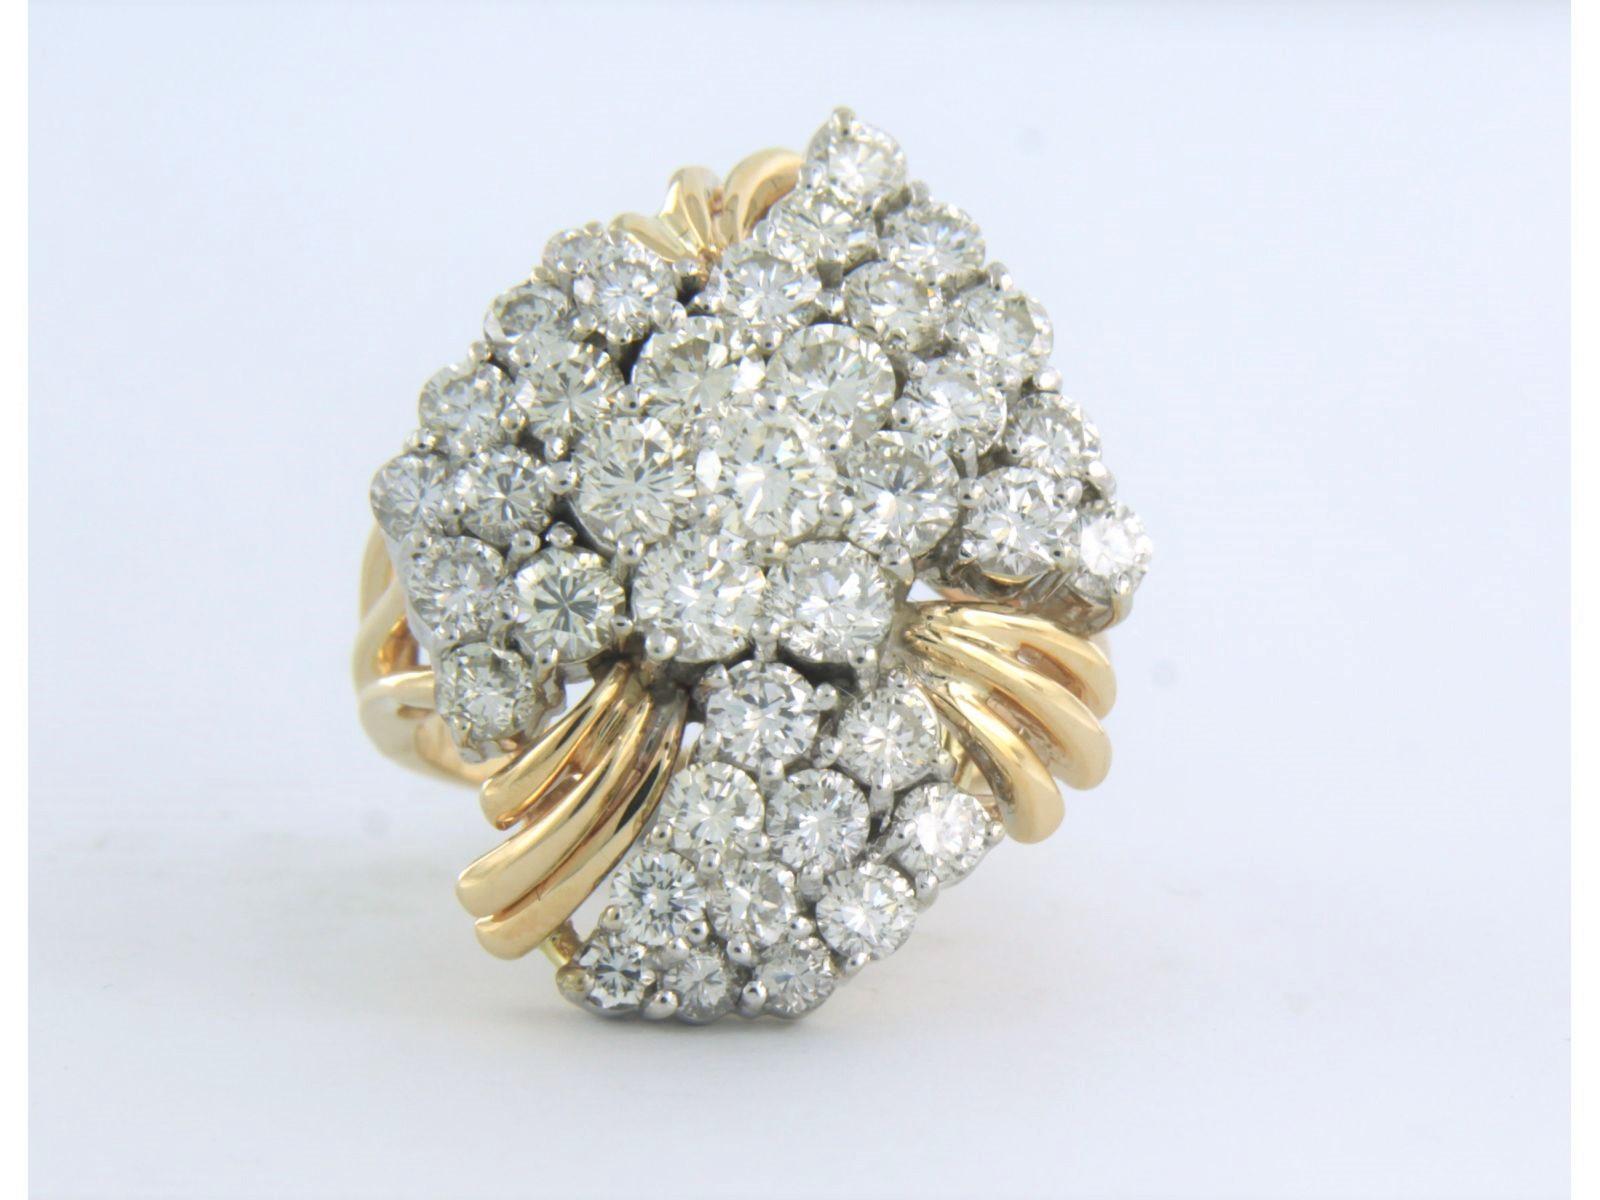 Ring aus 14k Bicolor-Gold, besetzt mit Diamanten im Brillantschliff bis zu . 2.40ct - H/I - VS/SI - Ringgröße U.S. 6.75 - EU. 17.25(54)

detaillierte Beschreibung:

die Oberseite des Rings ist 2,6 cm breit und 1,0 cm hoch

Ringgröße U.S. 6.75 - EU.